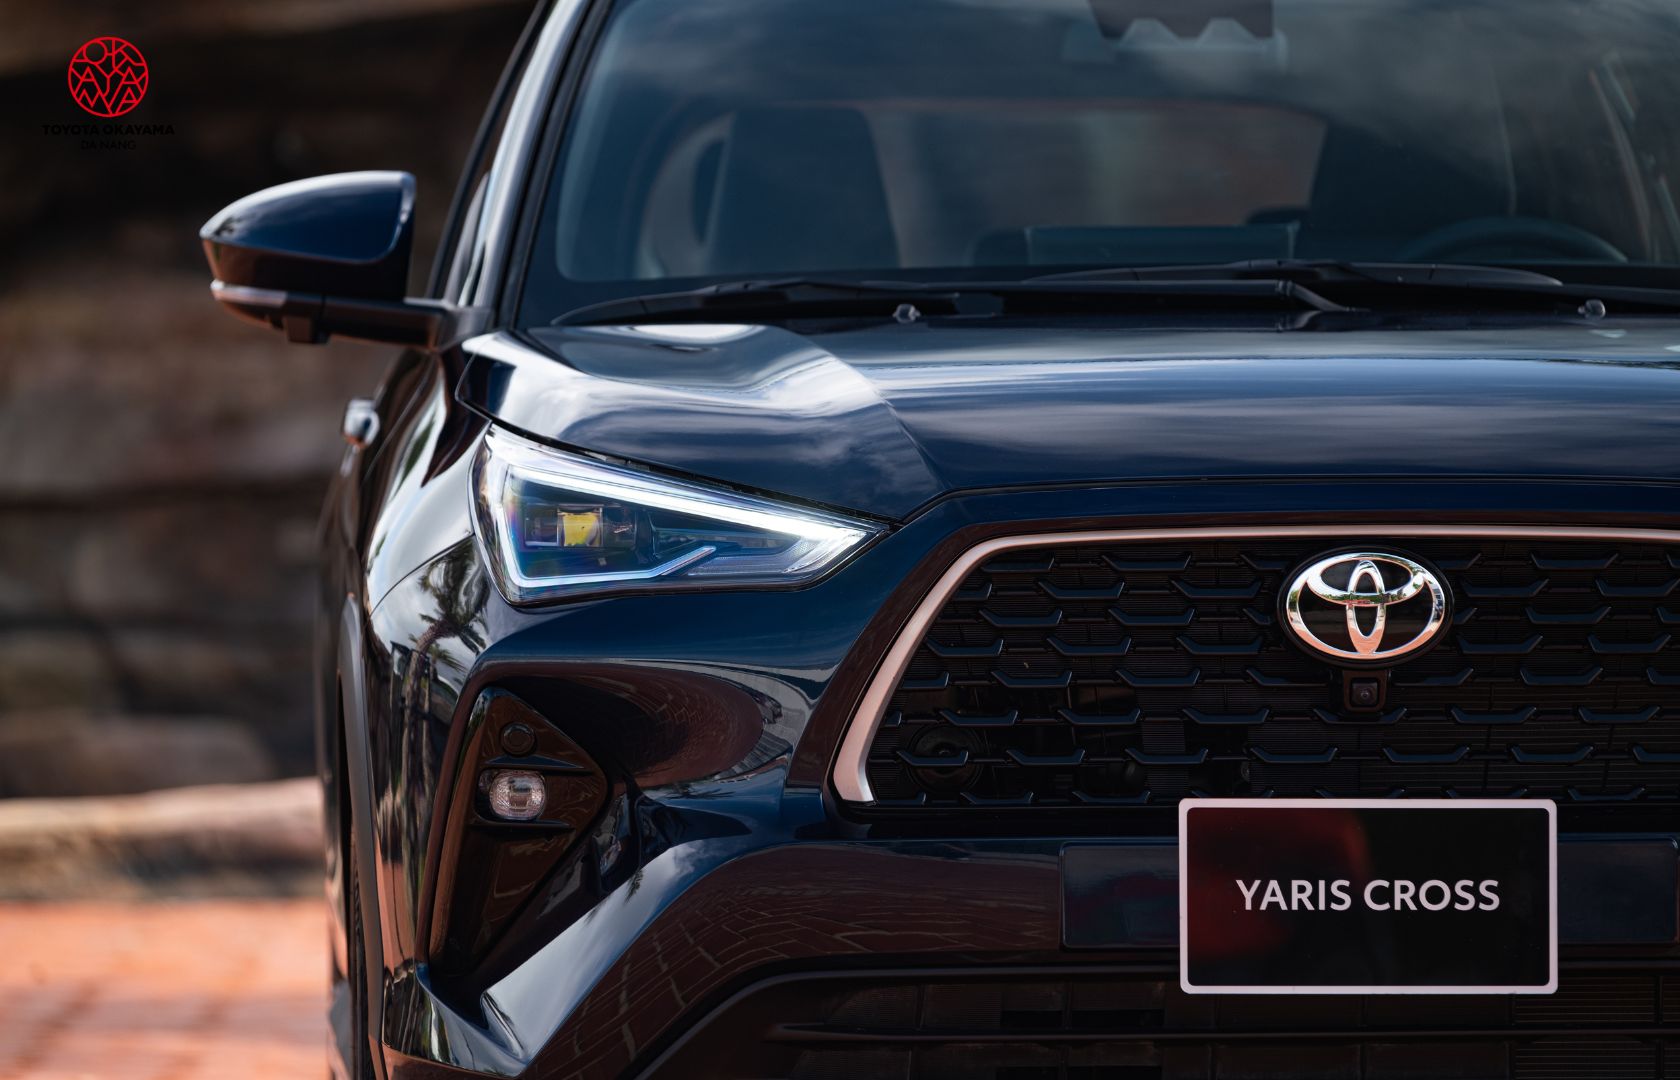 Toyota Yaris Cross màu đen phù hợp với người mệnh môc